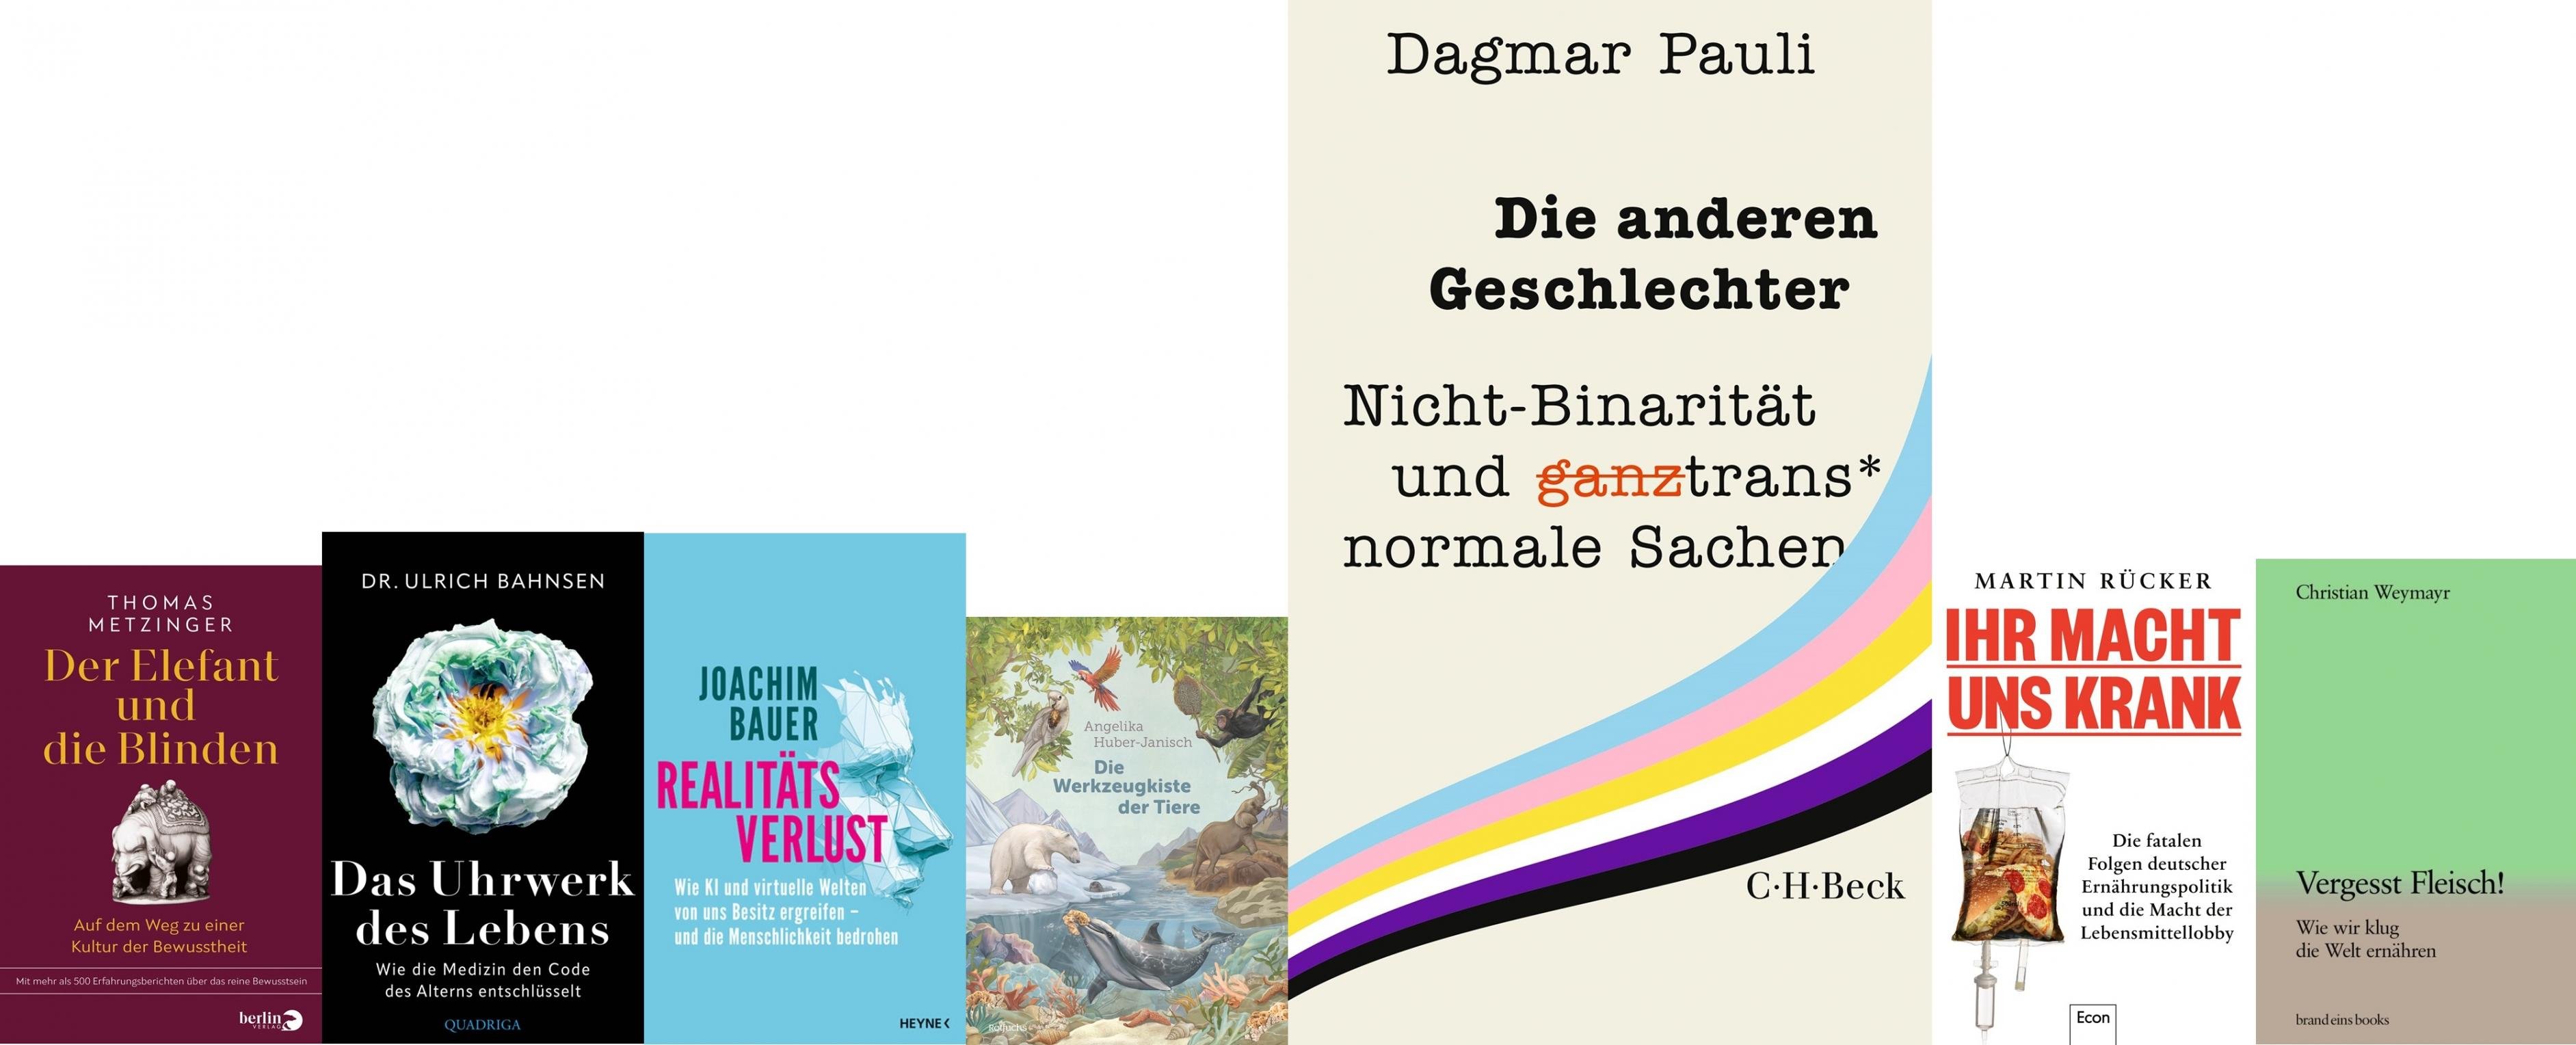 Mehrere Buchcover. Hervorgehoben ist das Buch „Die anderen Geschlechter“ von Dagmar Pauli.